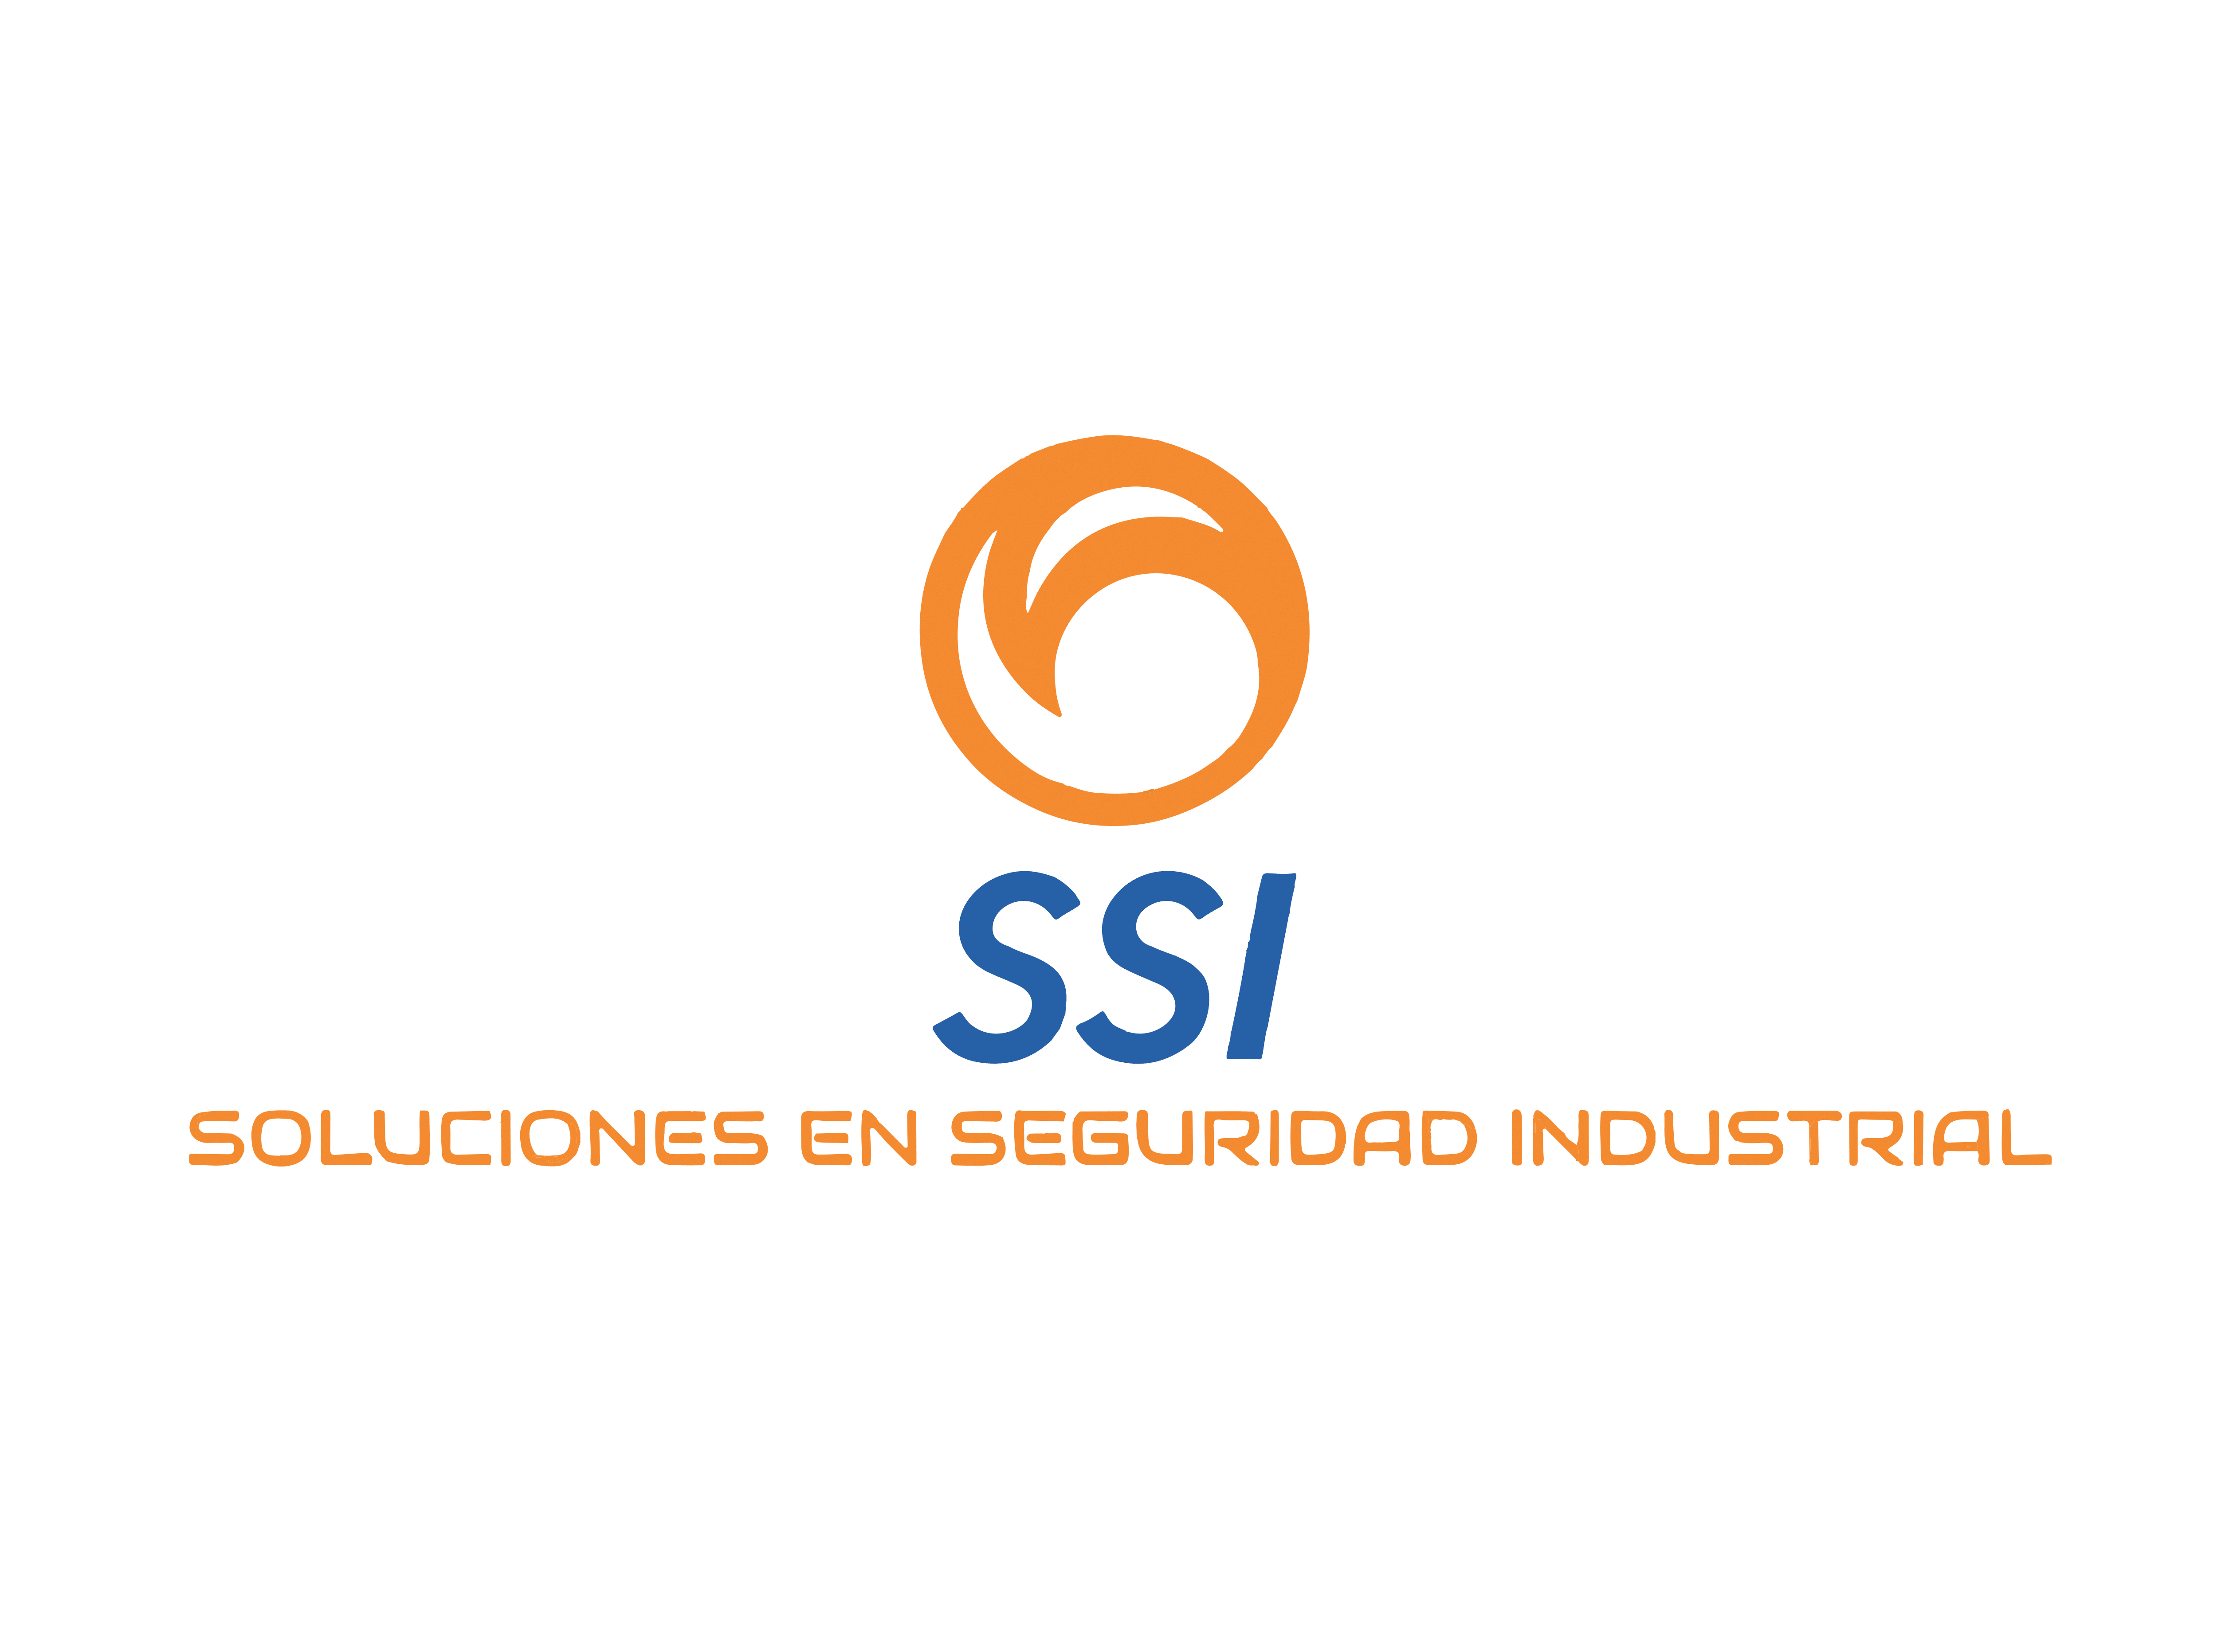 MEDIDOR DE CALIDAD DEL AIRE INTERIOR - Soluciones Seguridad Industrial